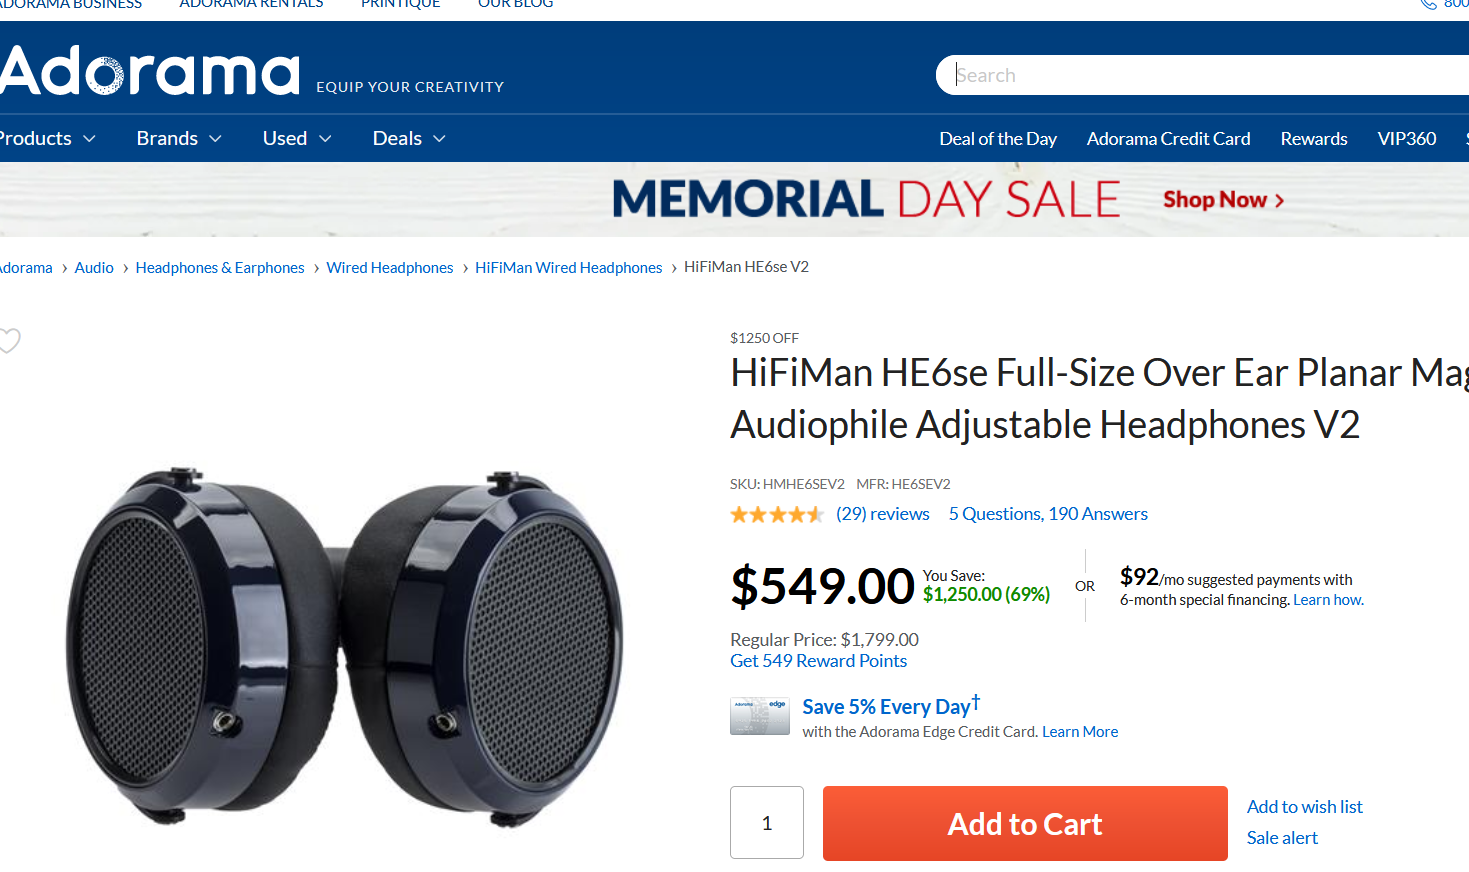 HiFiMan HE6-SE V2 Planar Magnetic Over-Ear Headphones $549 FS (YMMV) $549.99